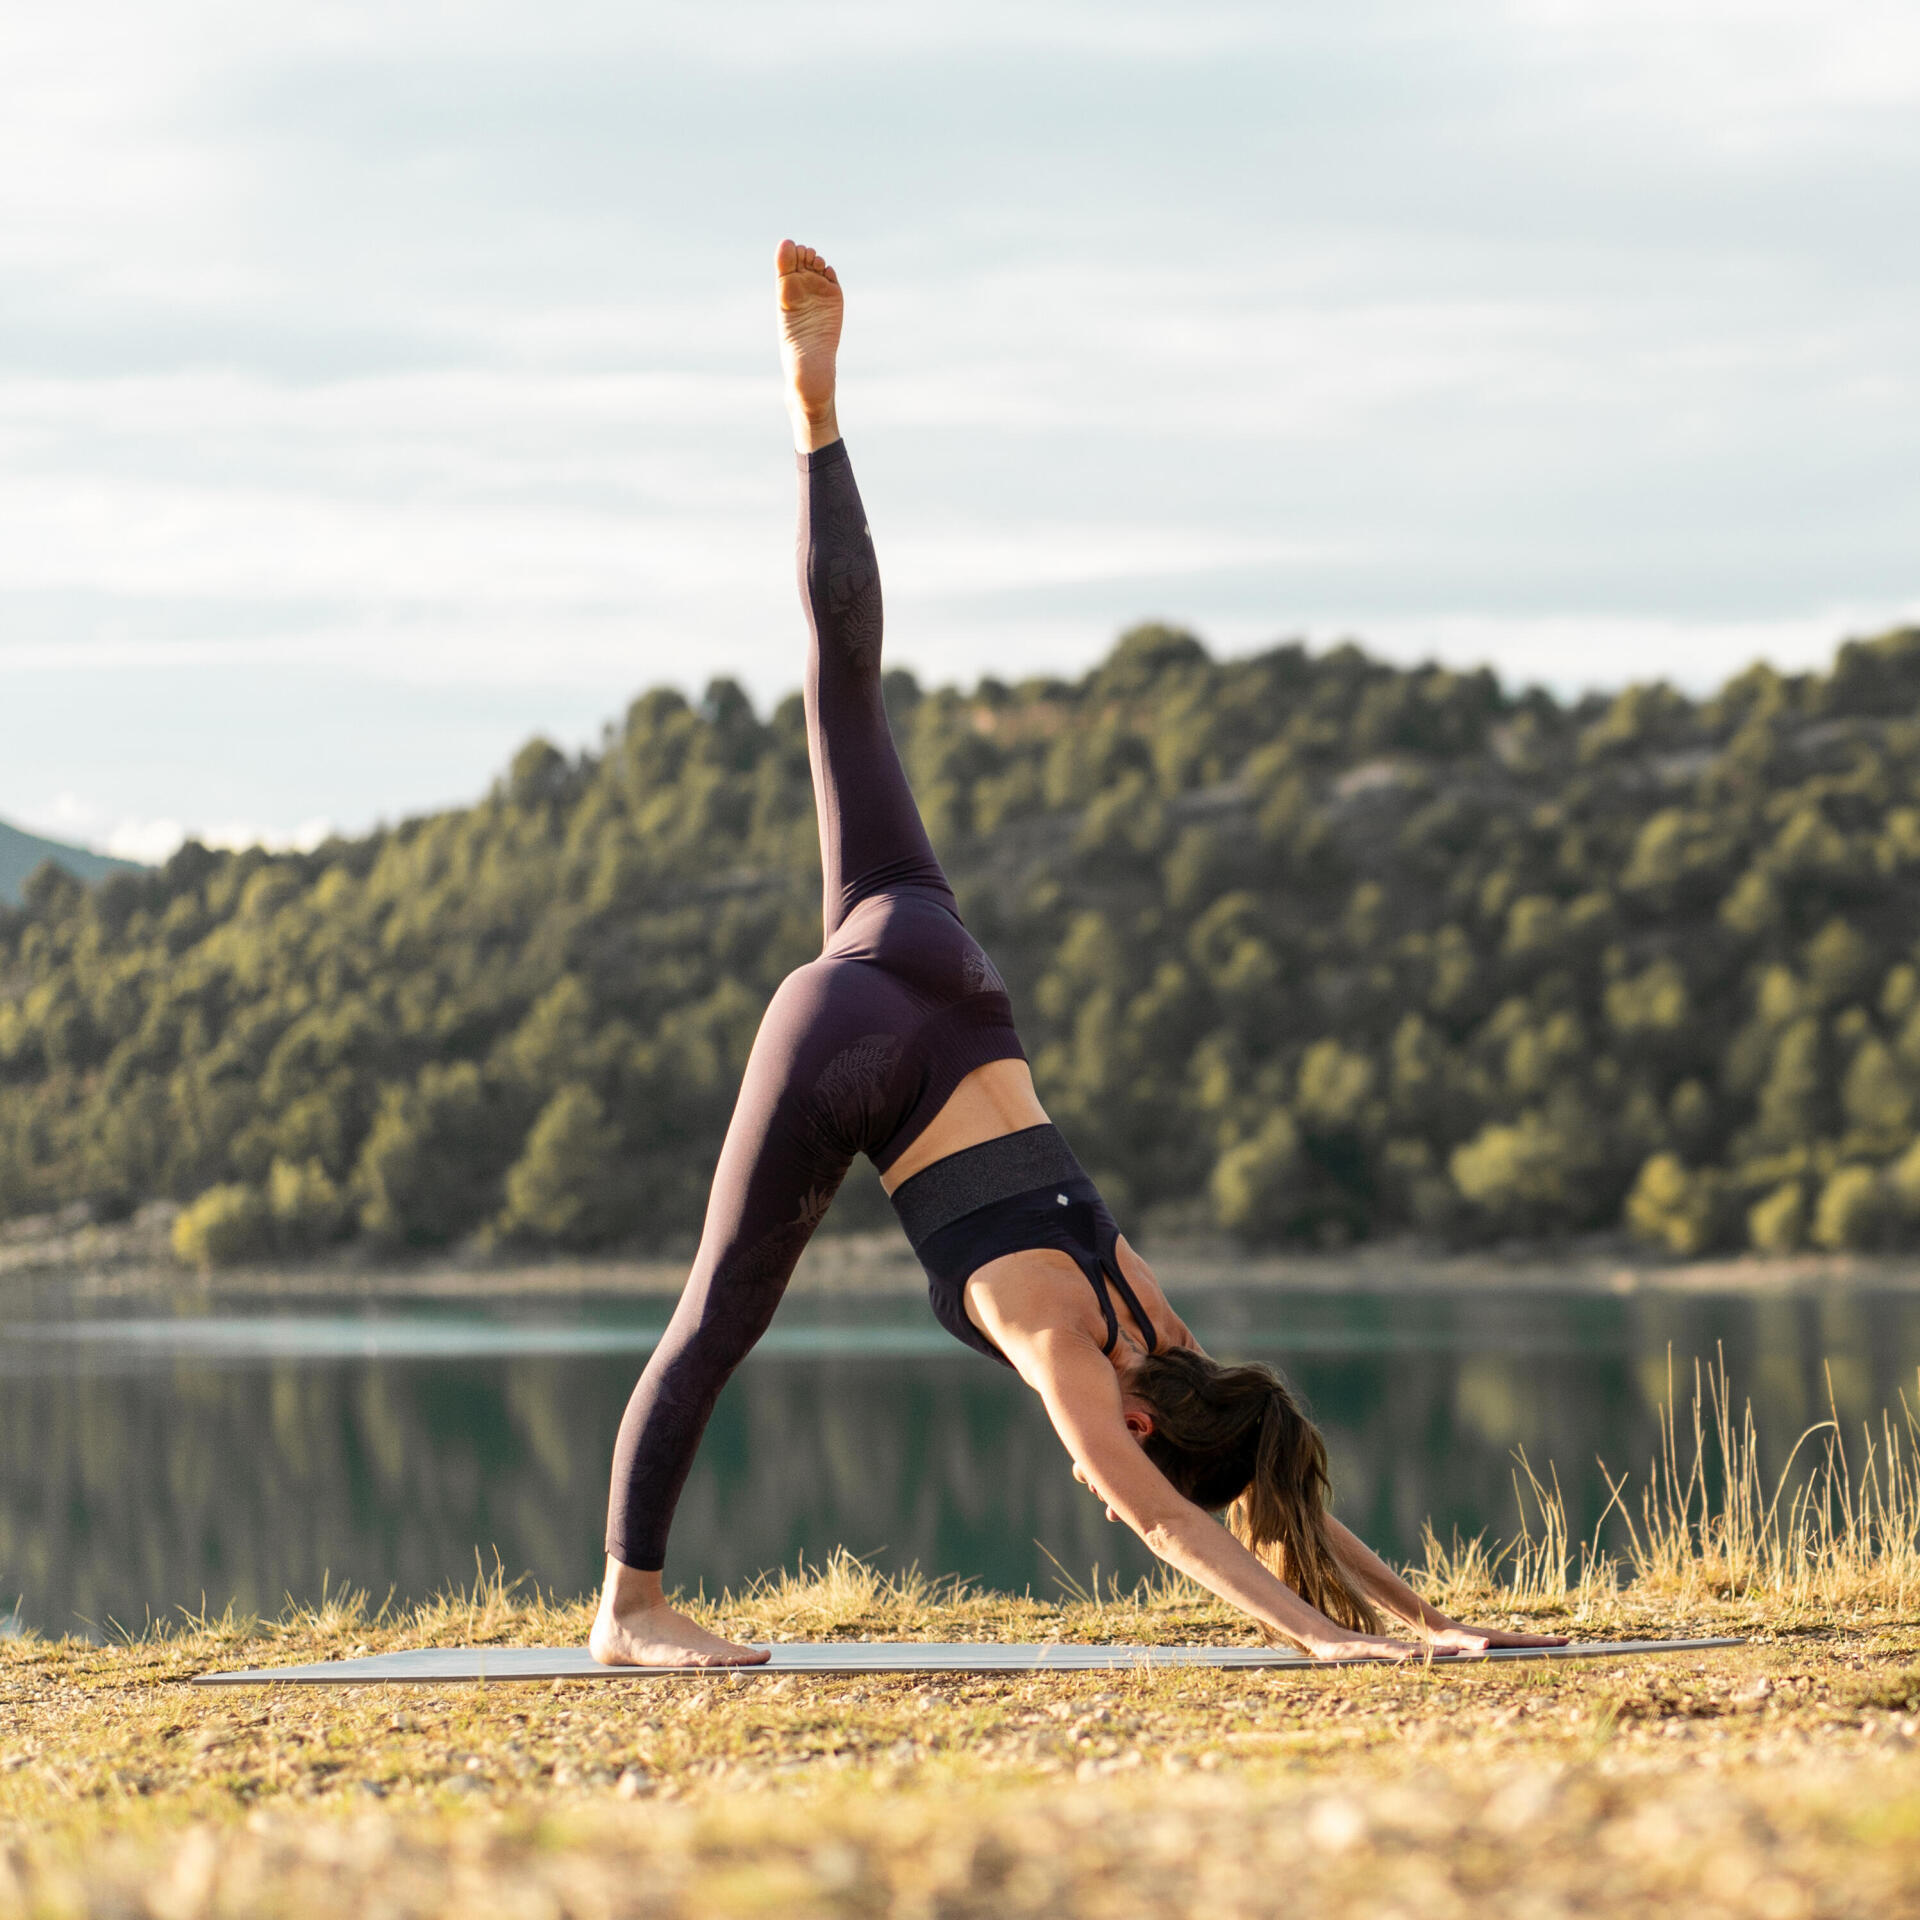 Yoga : 10 minutes pour apprendre la Salutation au Soleil - Blog My Actiforme